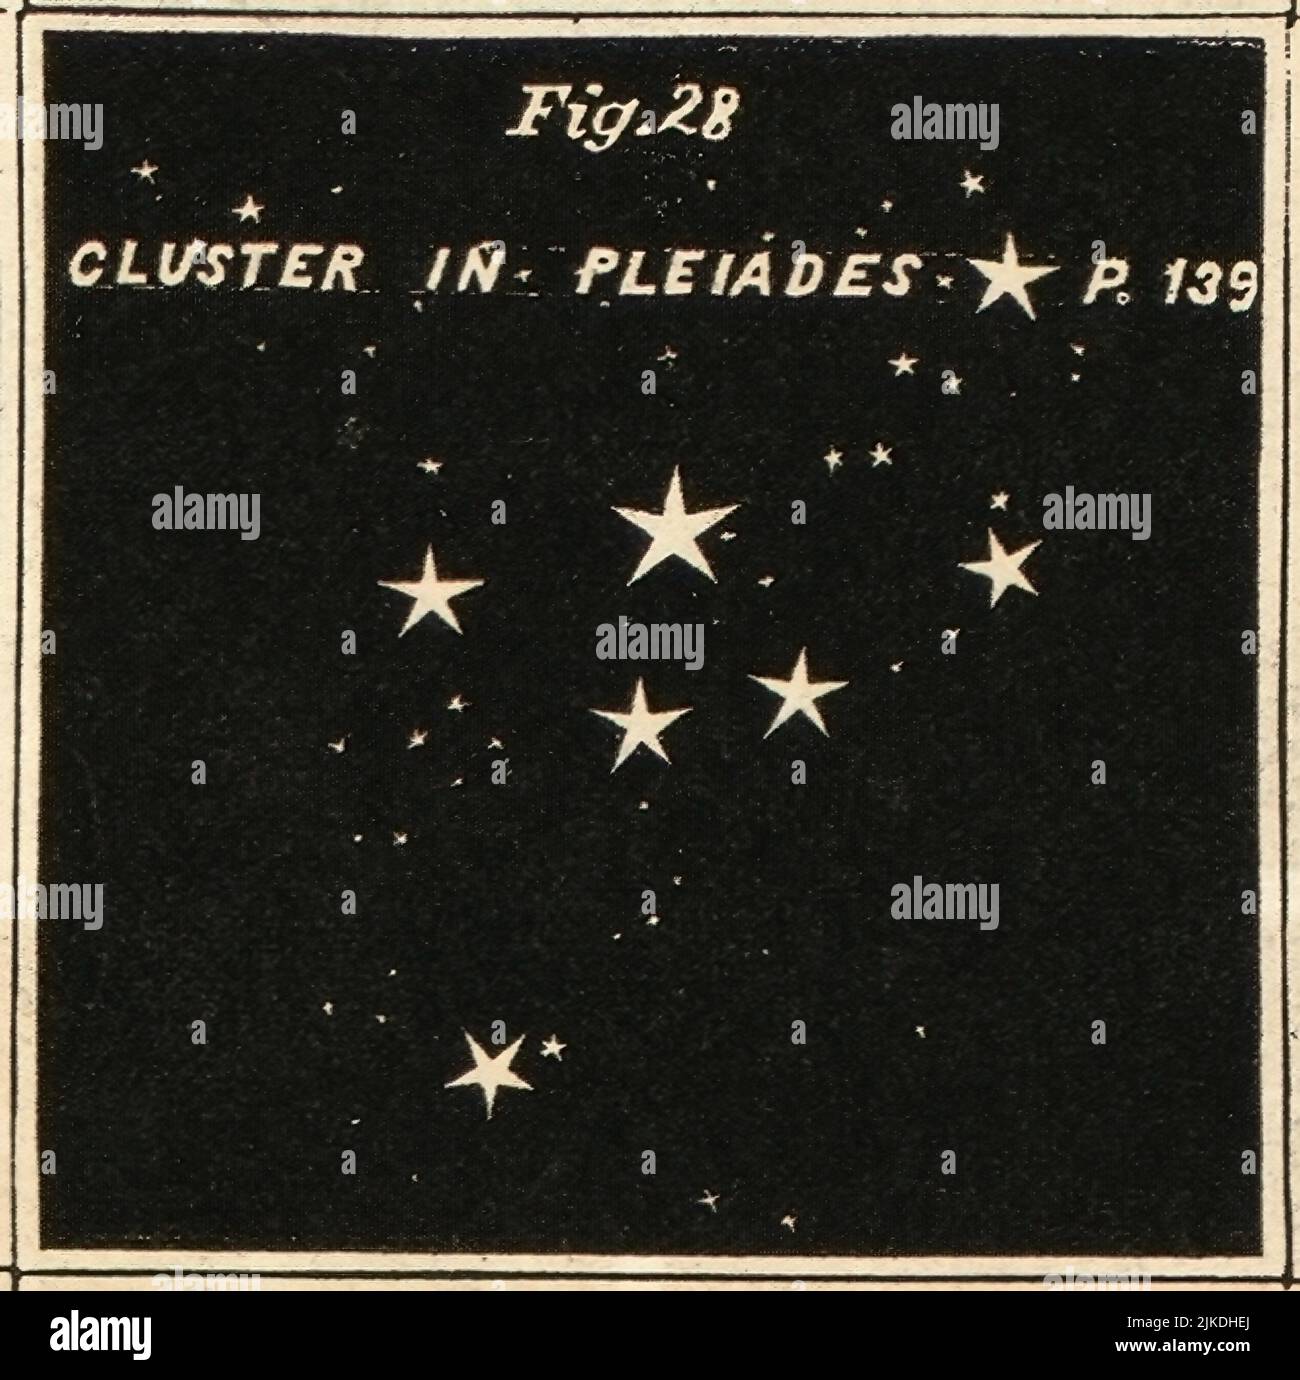 Cluster in Plejaden - Atlas entwickelt, um Burritts Geografie des Himmels zu illustrieren - Burritt, Elijah H. Doppelte Sterne und Sternhaufen. Cluster, Stockfoto